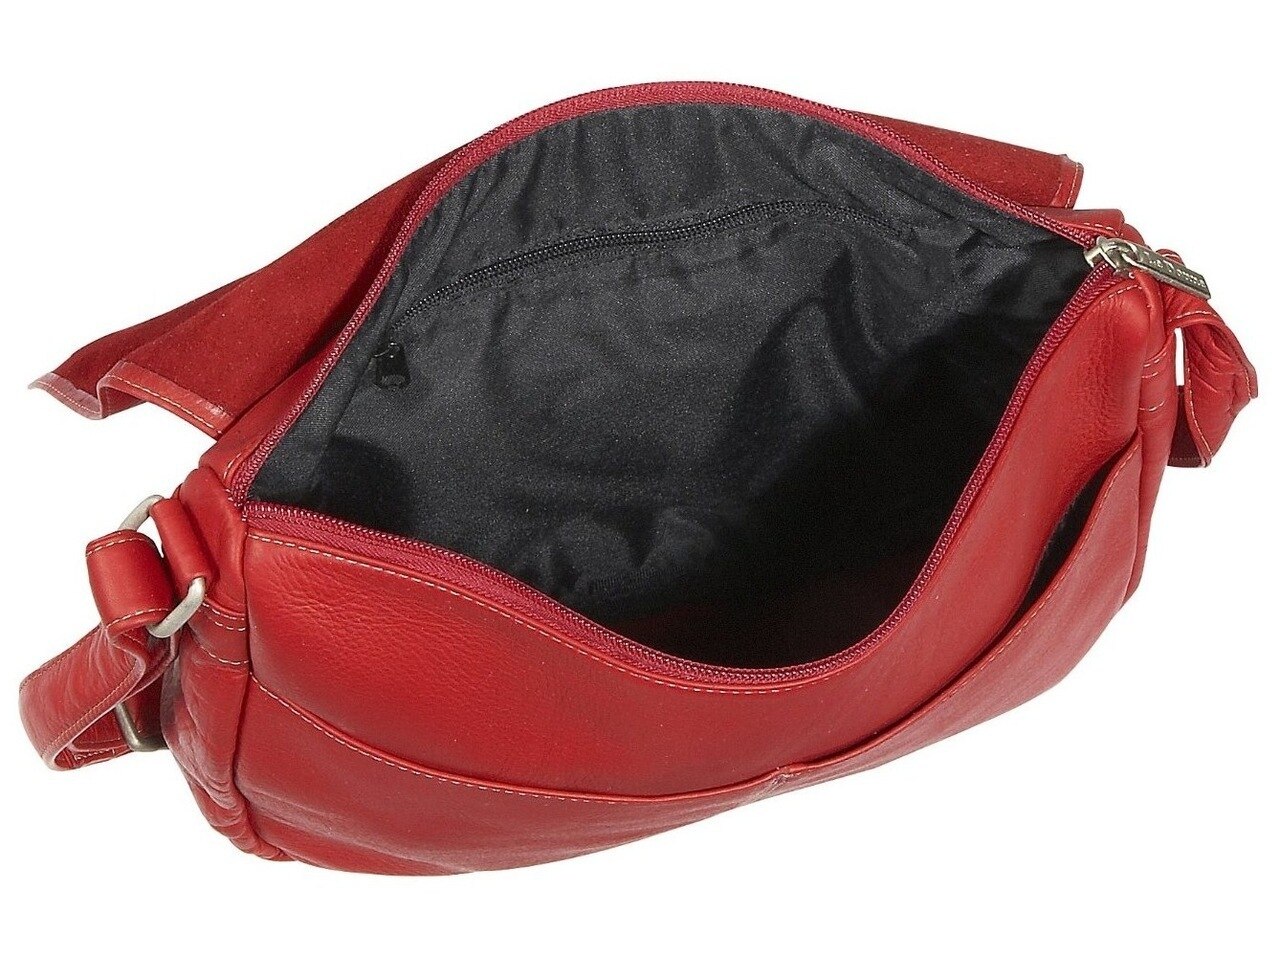 Le Donne Leather Full Flap Over Shoulder Bag H-148R - image 2 of 6